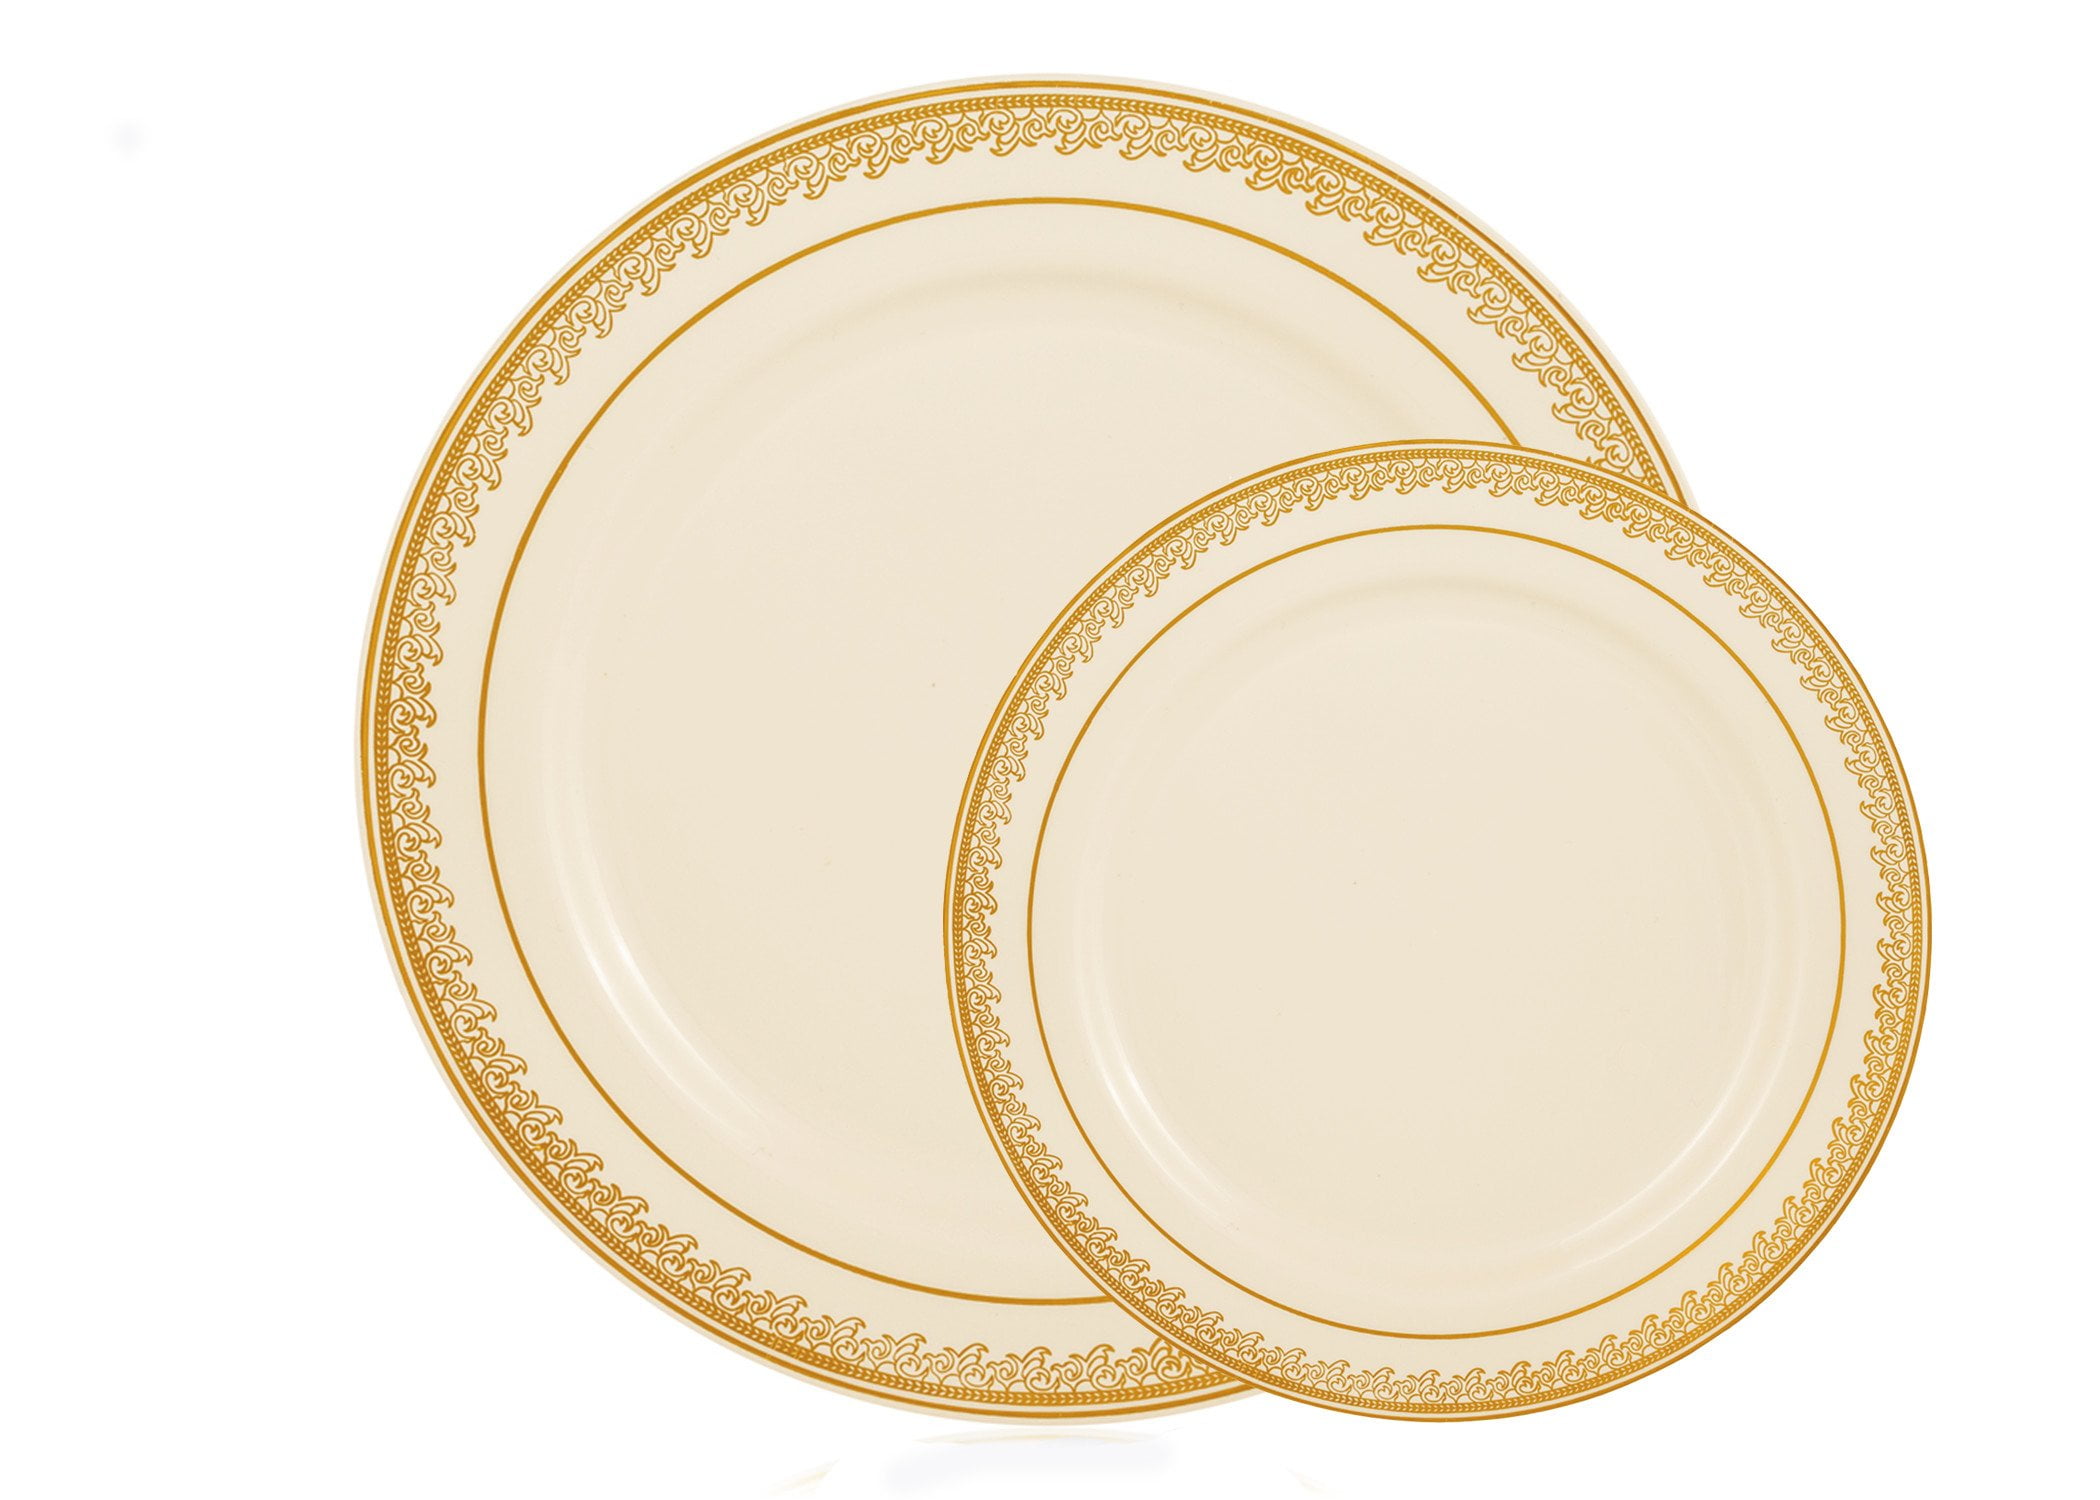 40 Piece Elegant Plastic Plates Set Fancy Disposable